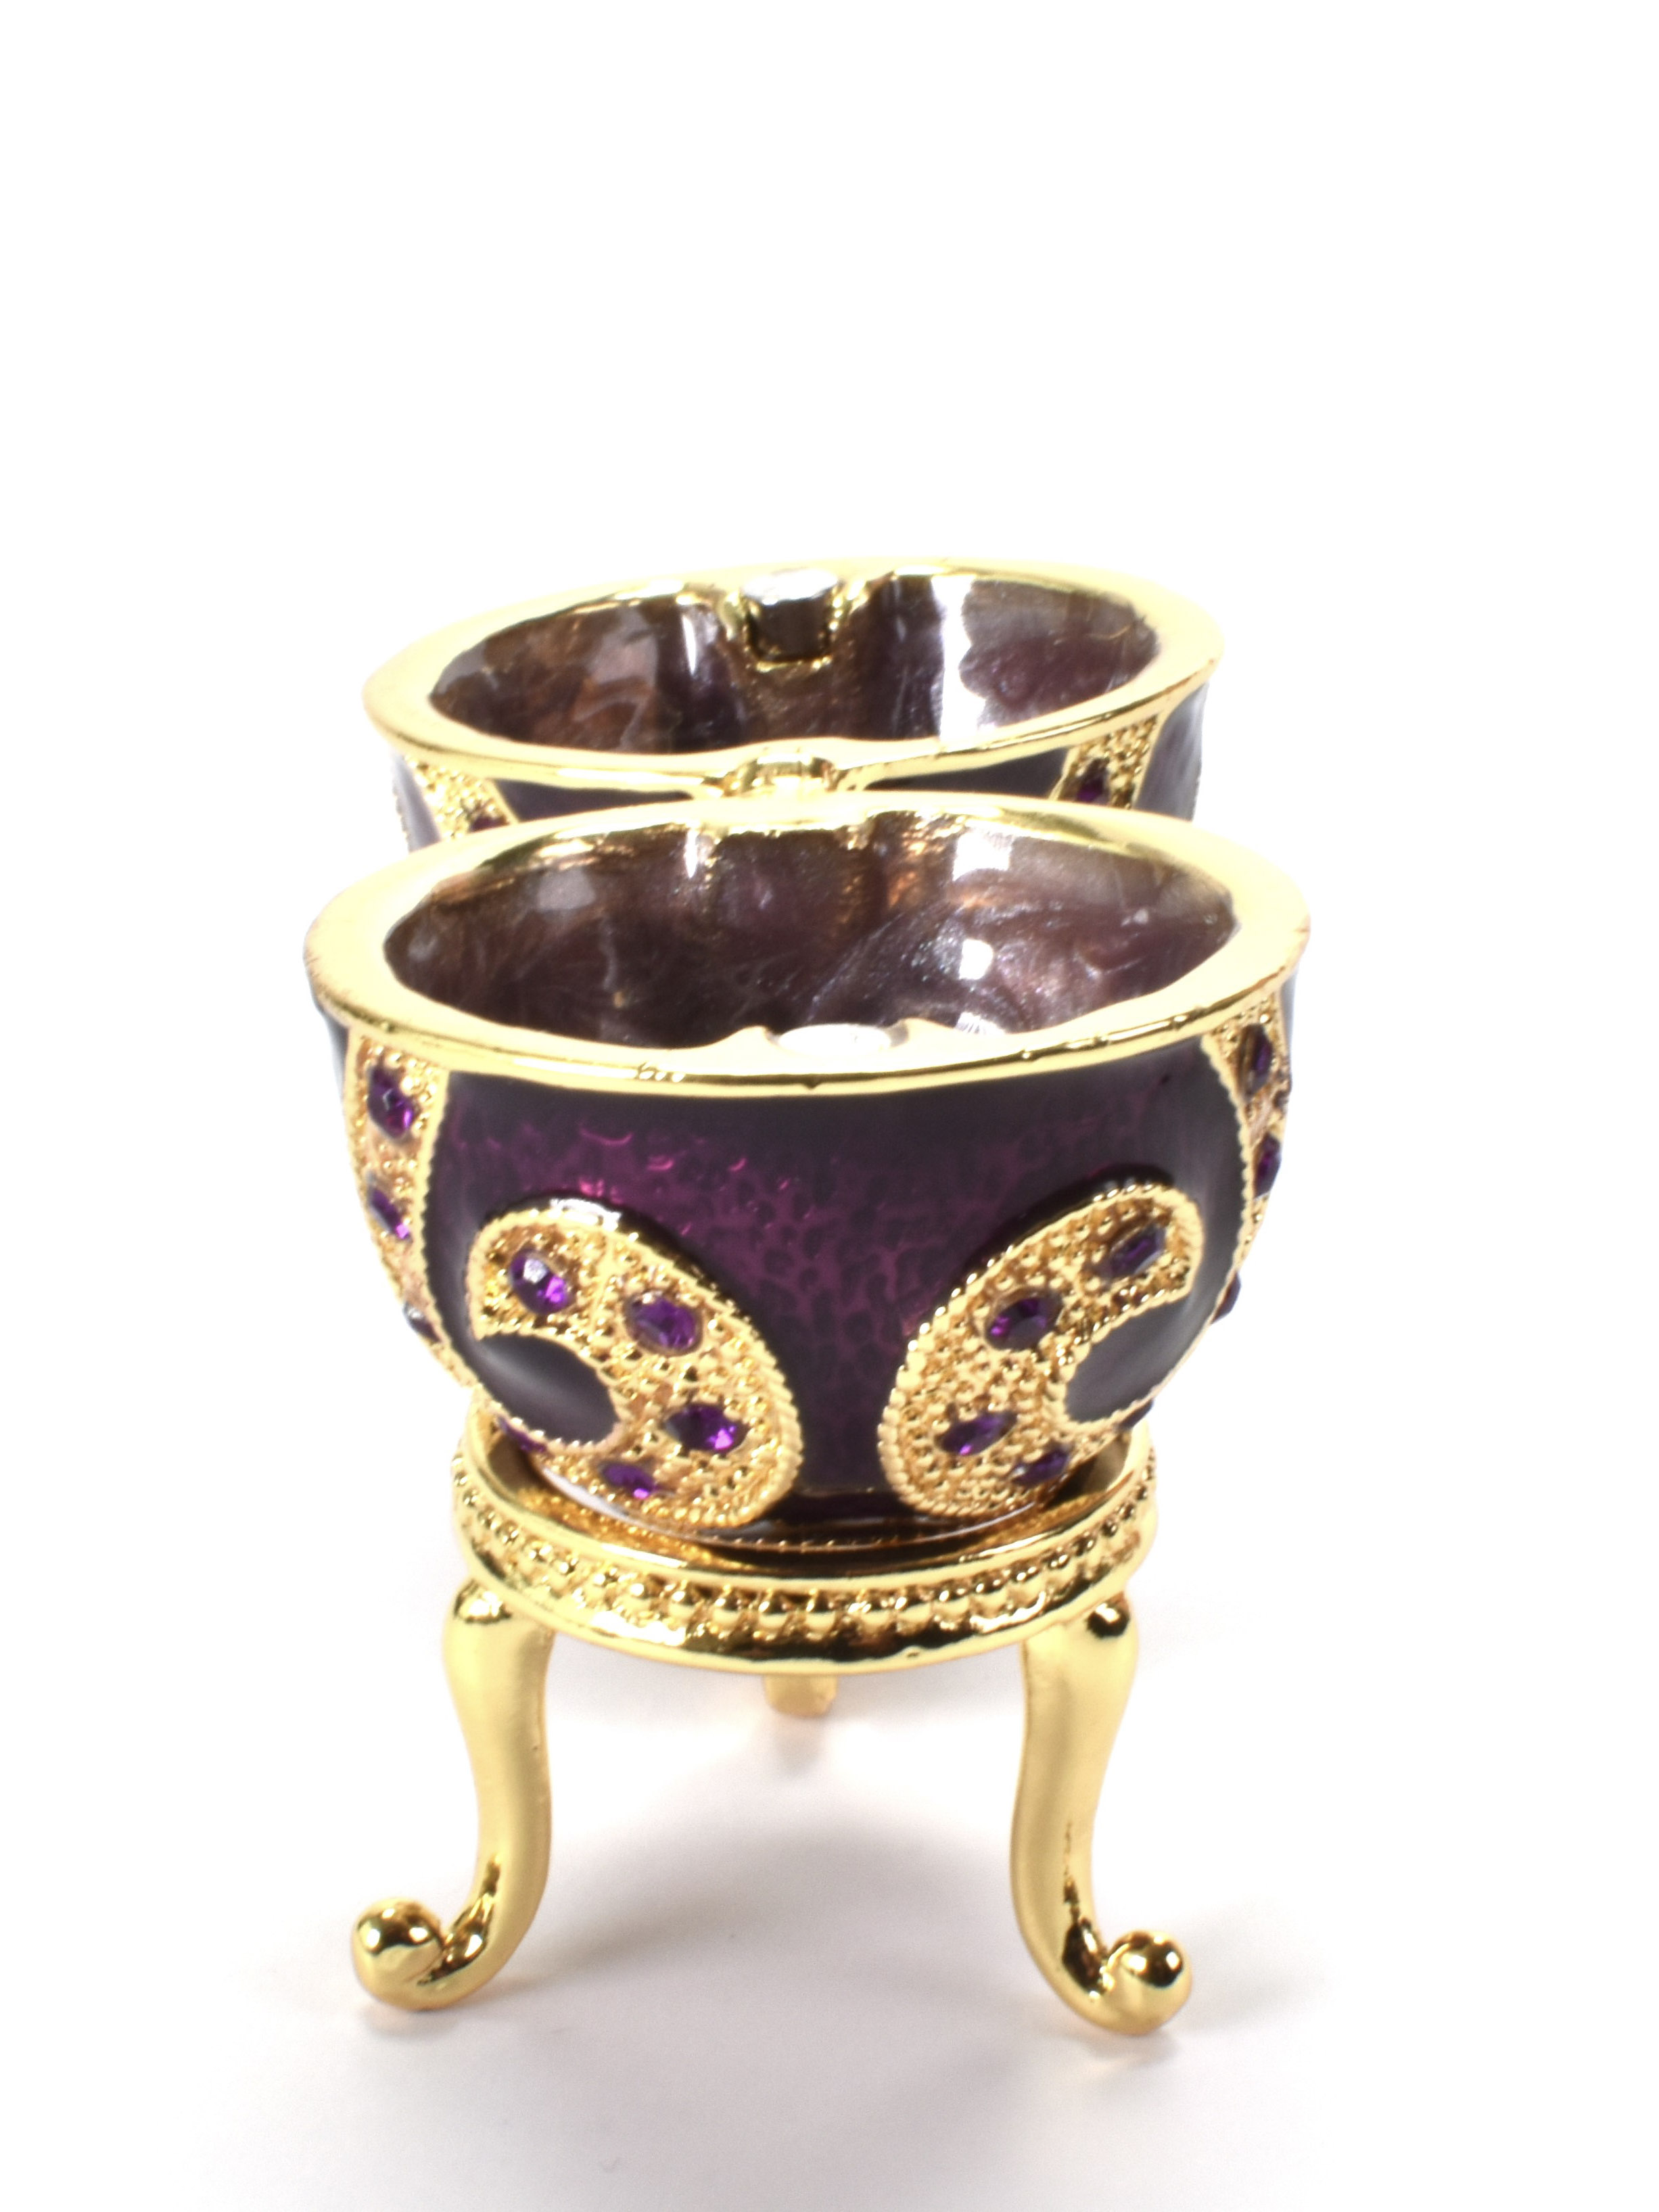 Ei op voet - in doosje - Fabergé stijl, van de Czars Collectie